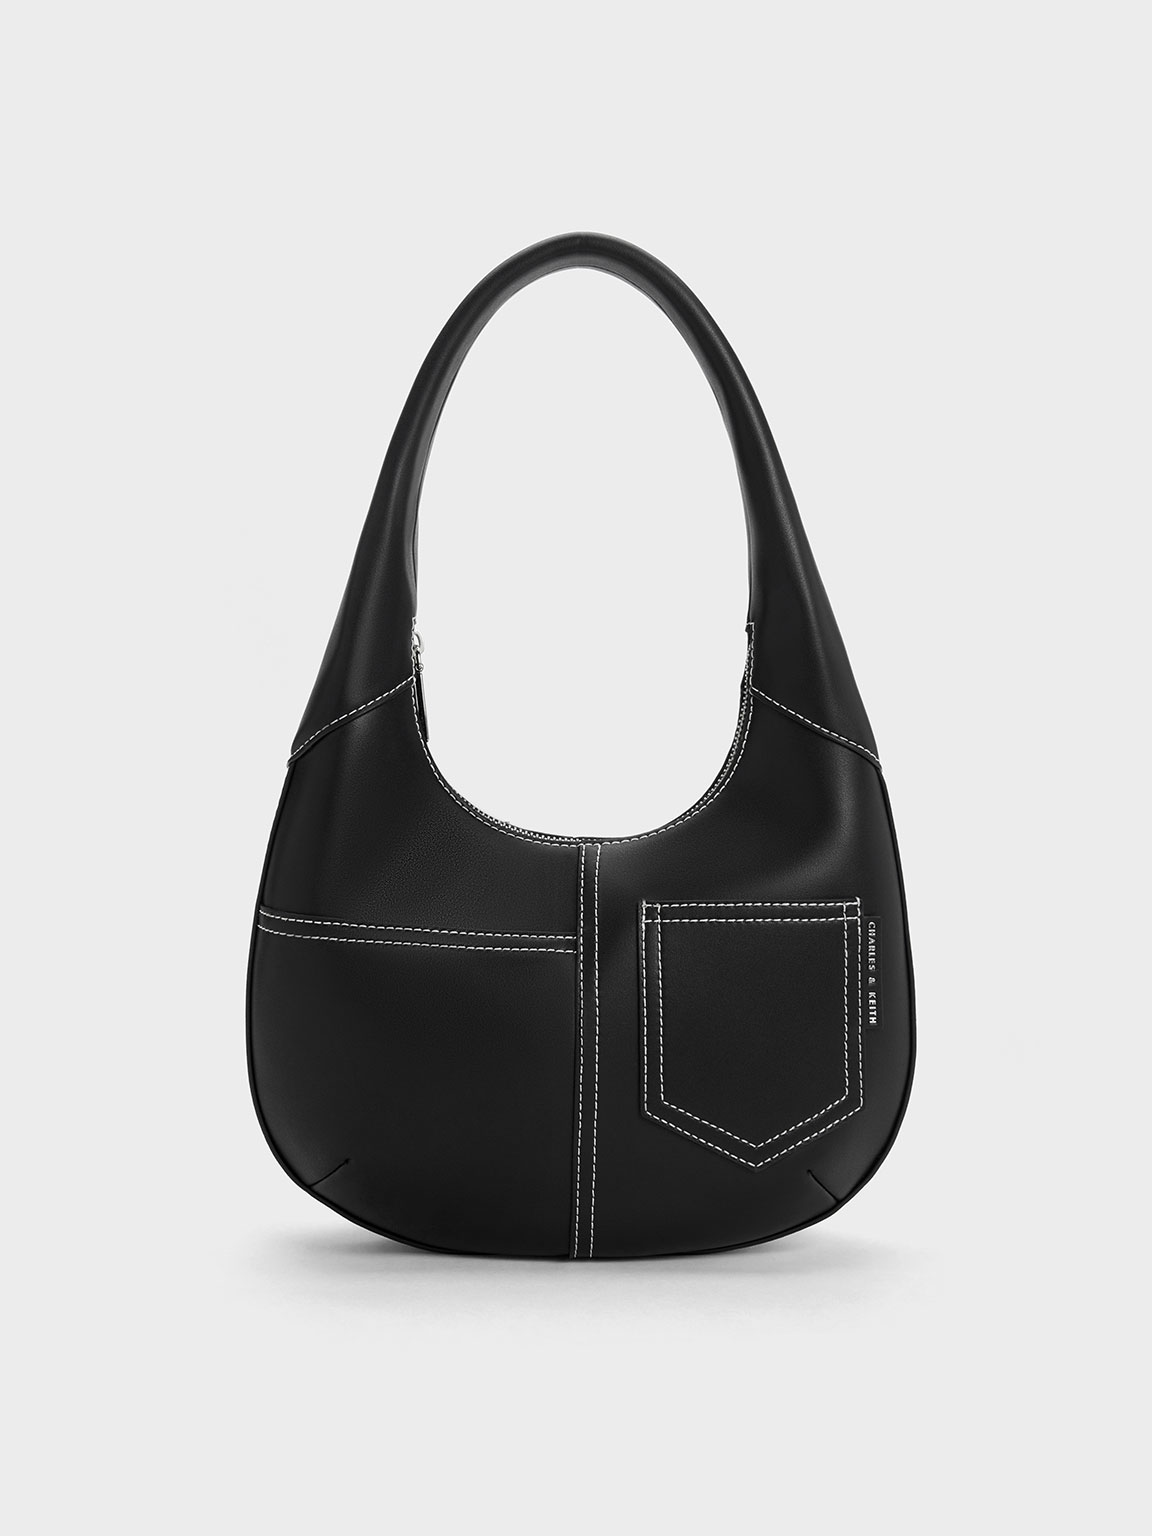 Buy Black Slouchy Shoulder Bag Round Hobo Bag Overnight Bag Online in India  